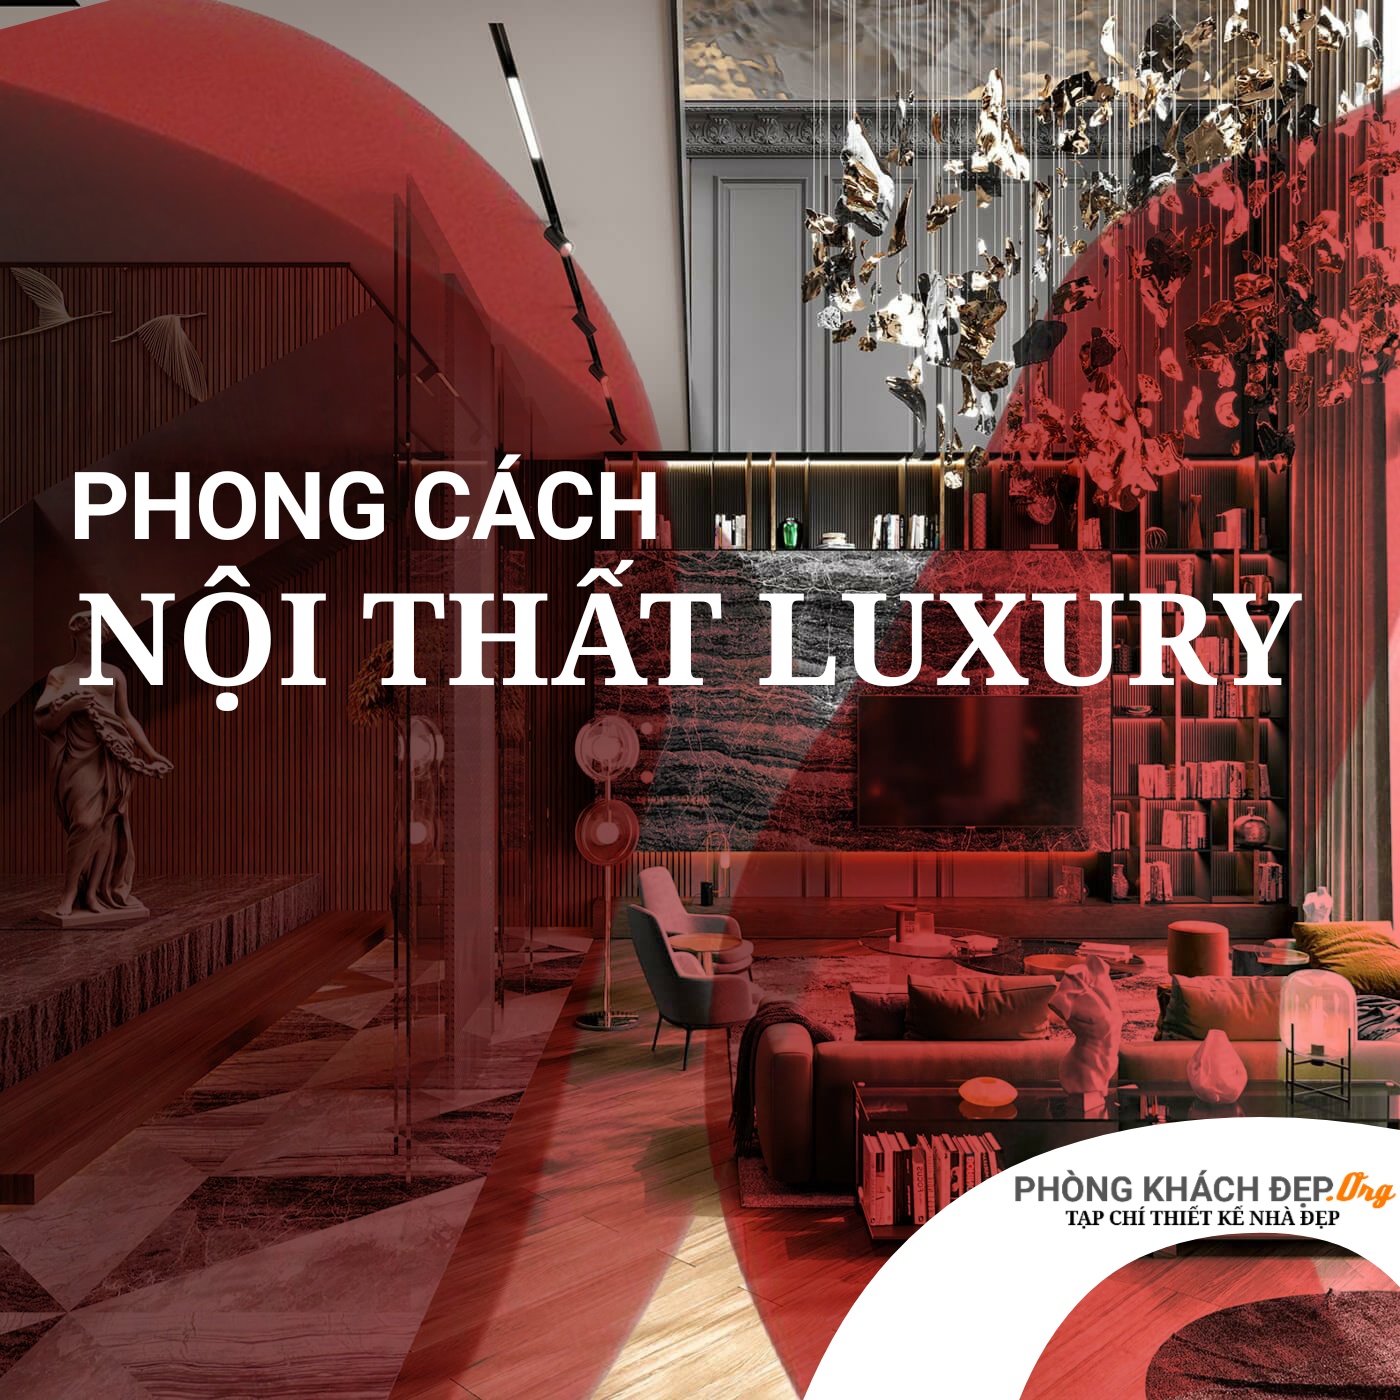 Phong cách nội thất luxury